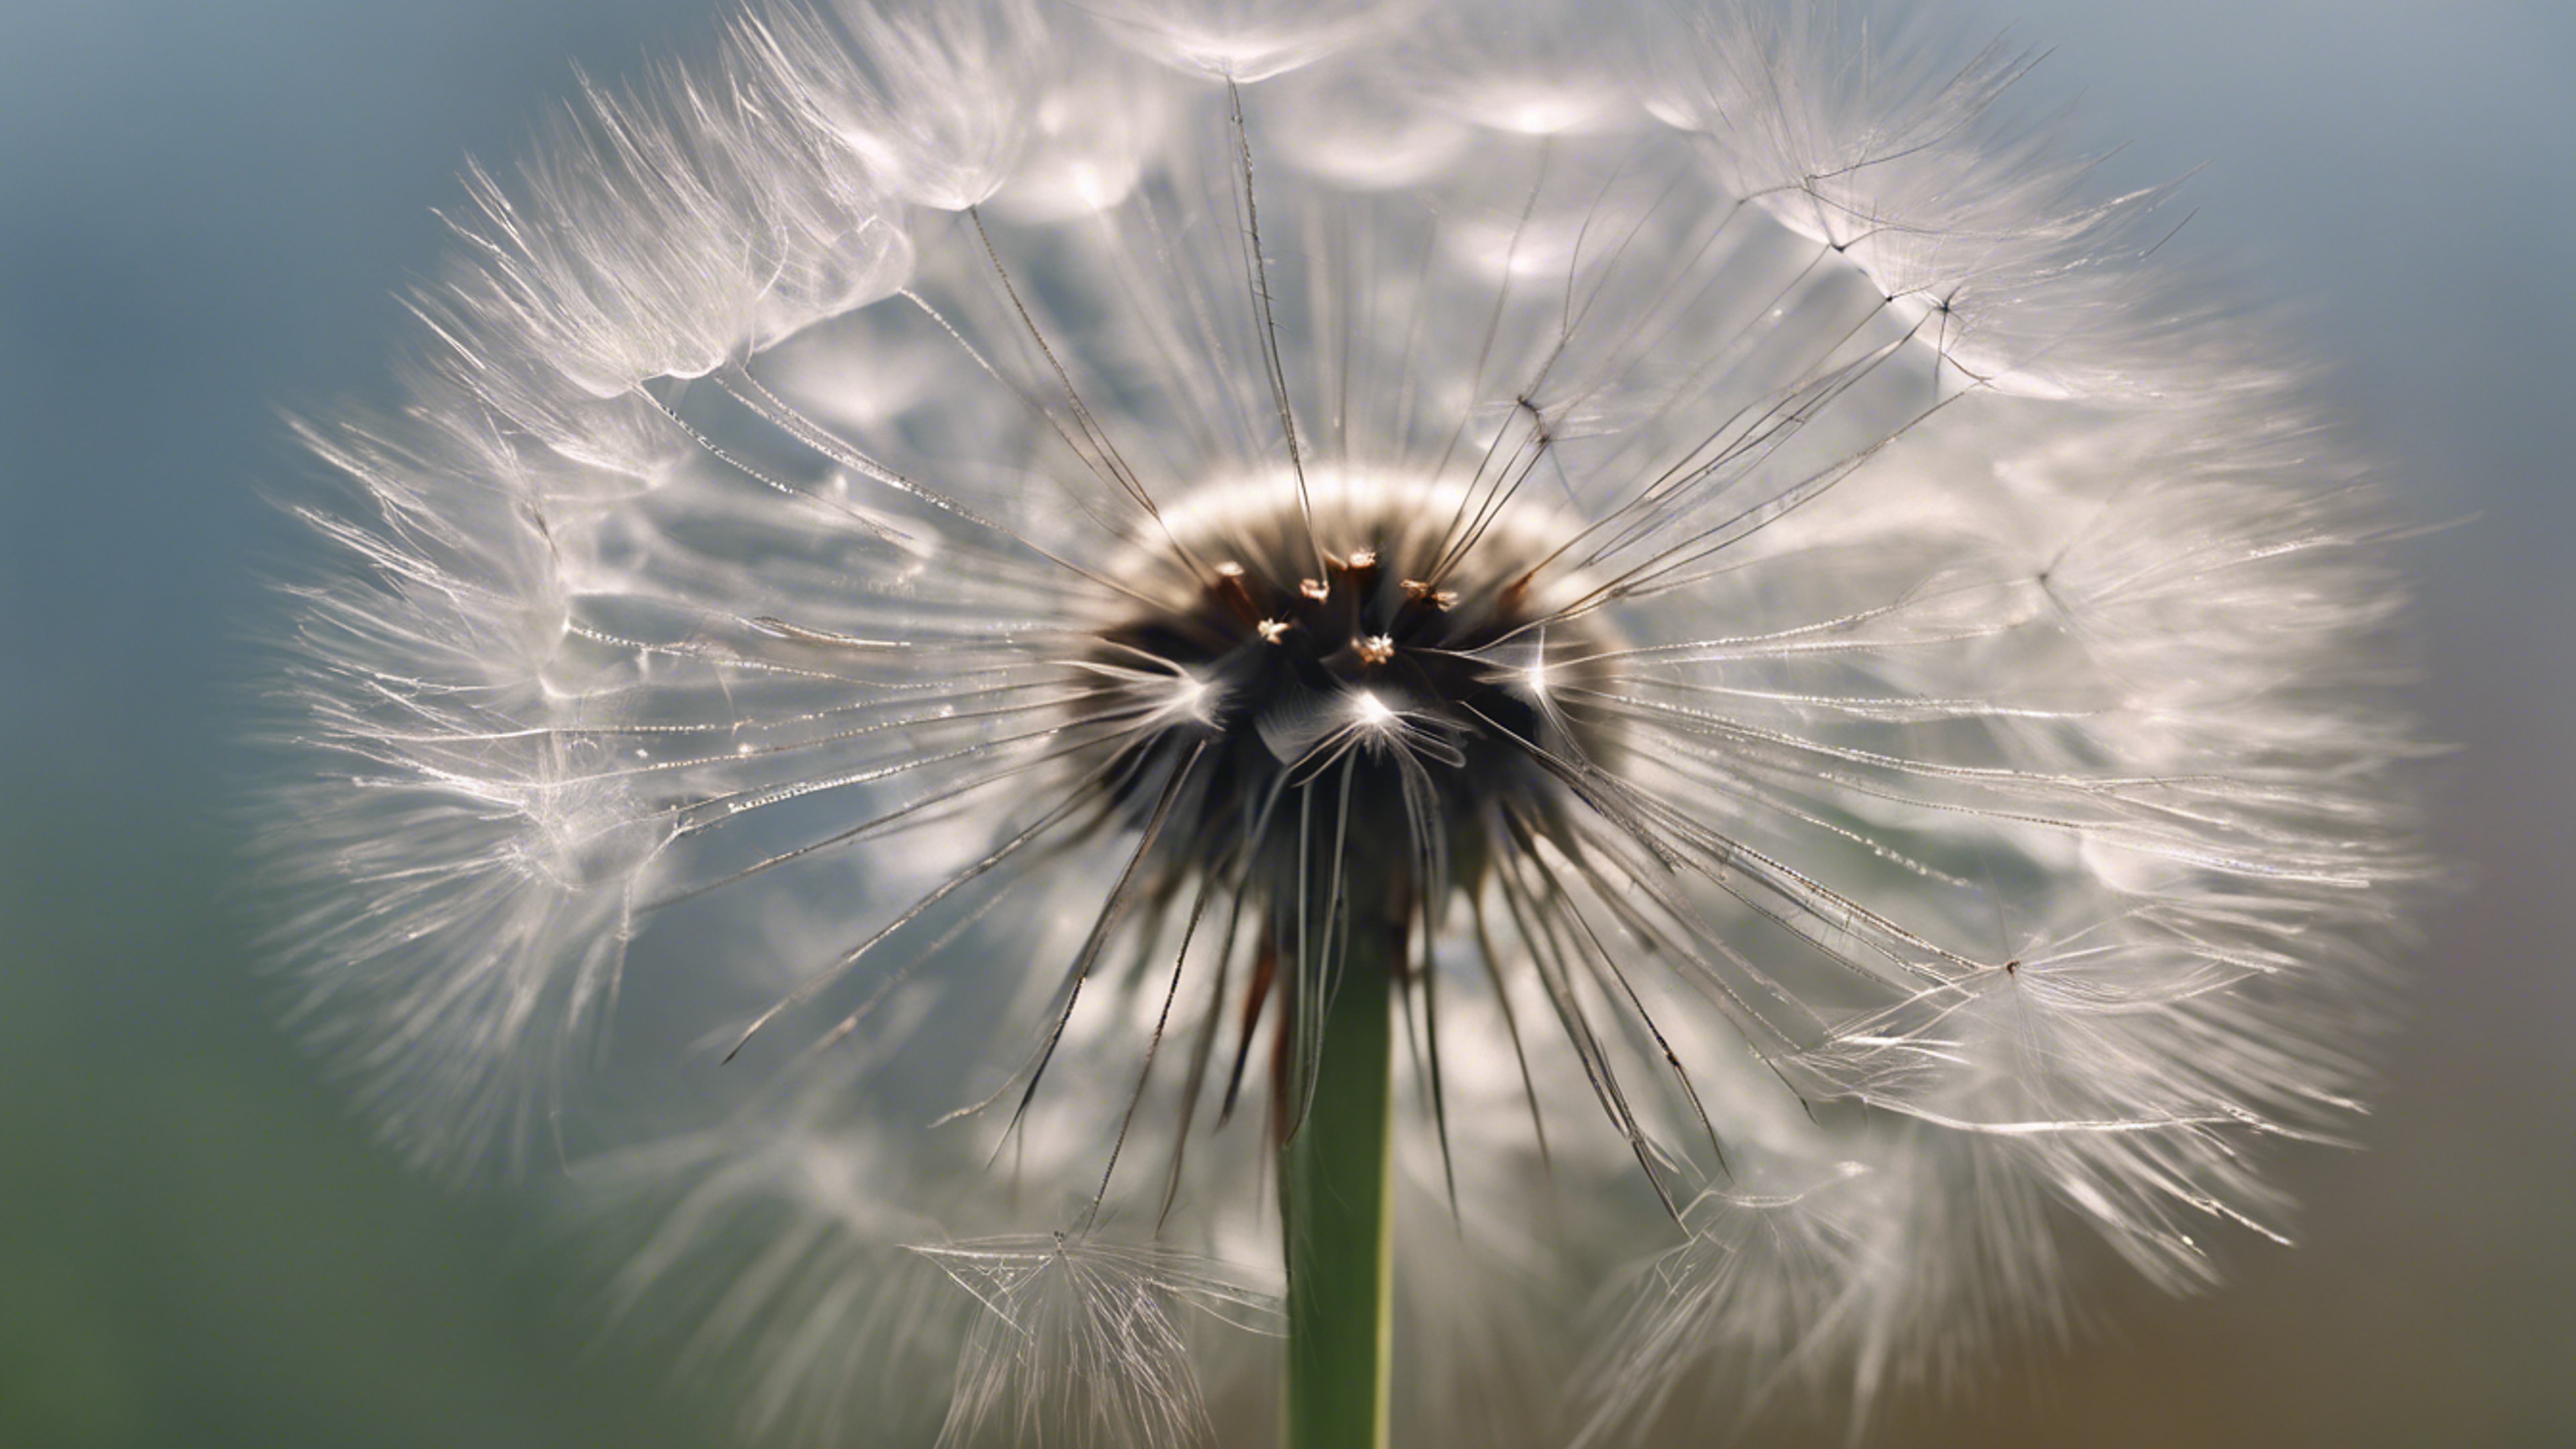 A delicate dandelion seed head, ready to disperse in the wind.壁紙[0f636e5a0c194b1eb7e8]